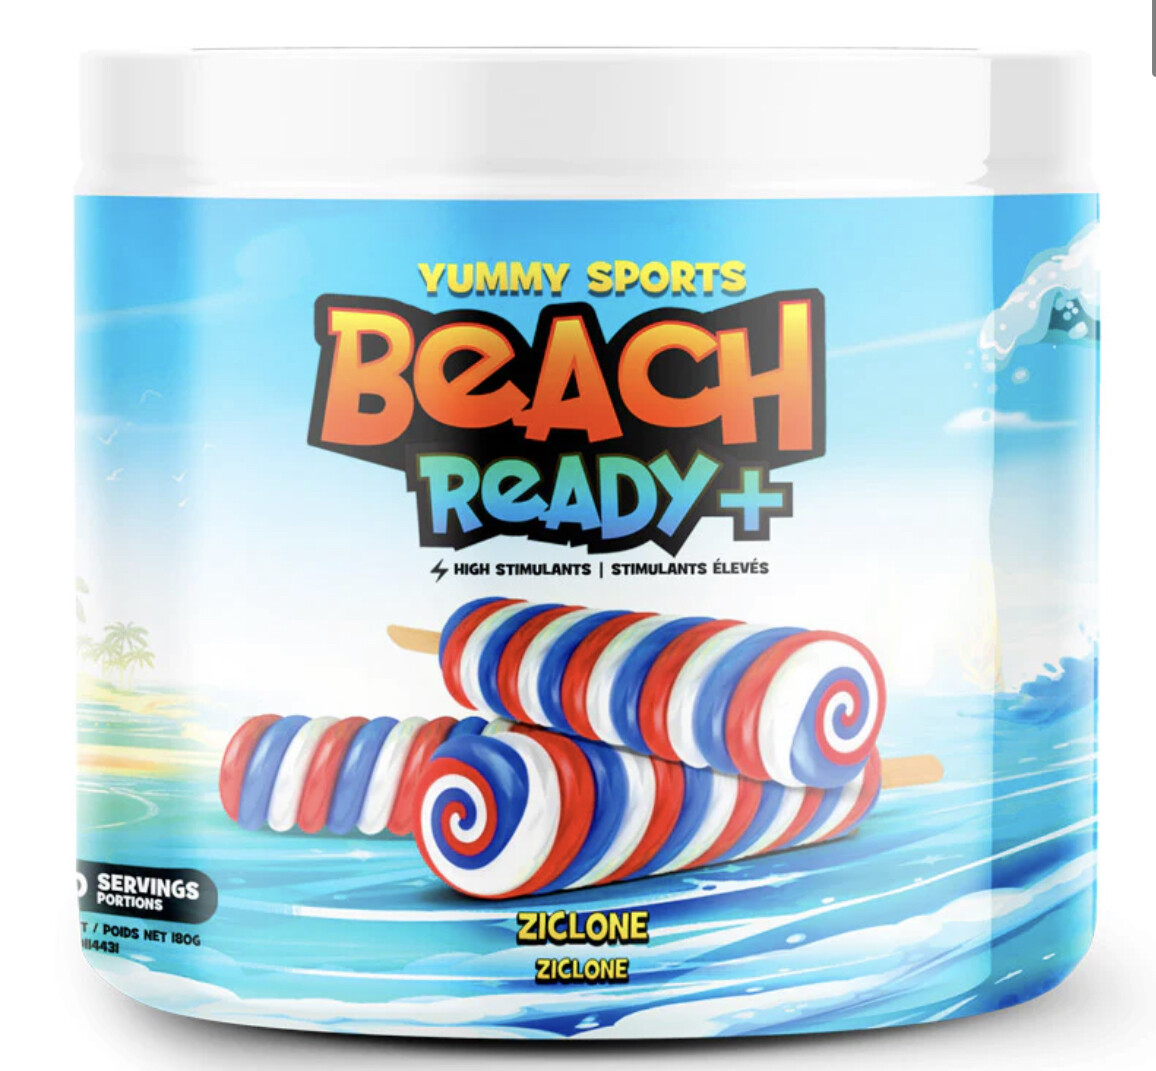 Yummy Sports Beach Ready + (brûleur de graisse à haute teneur en stimulants) ZICLONE 180g